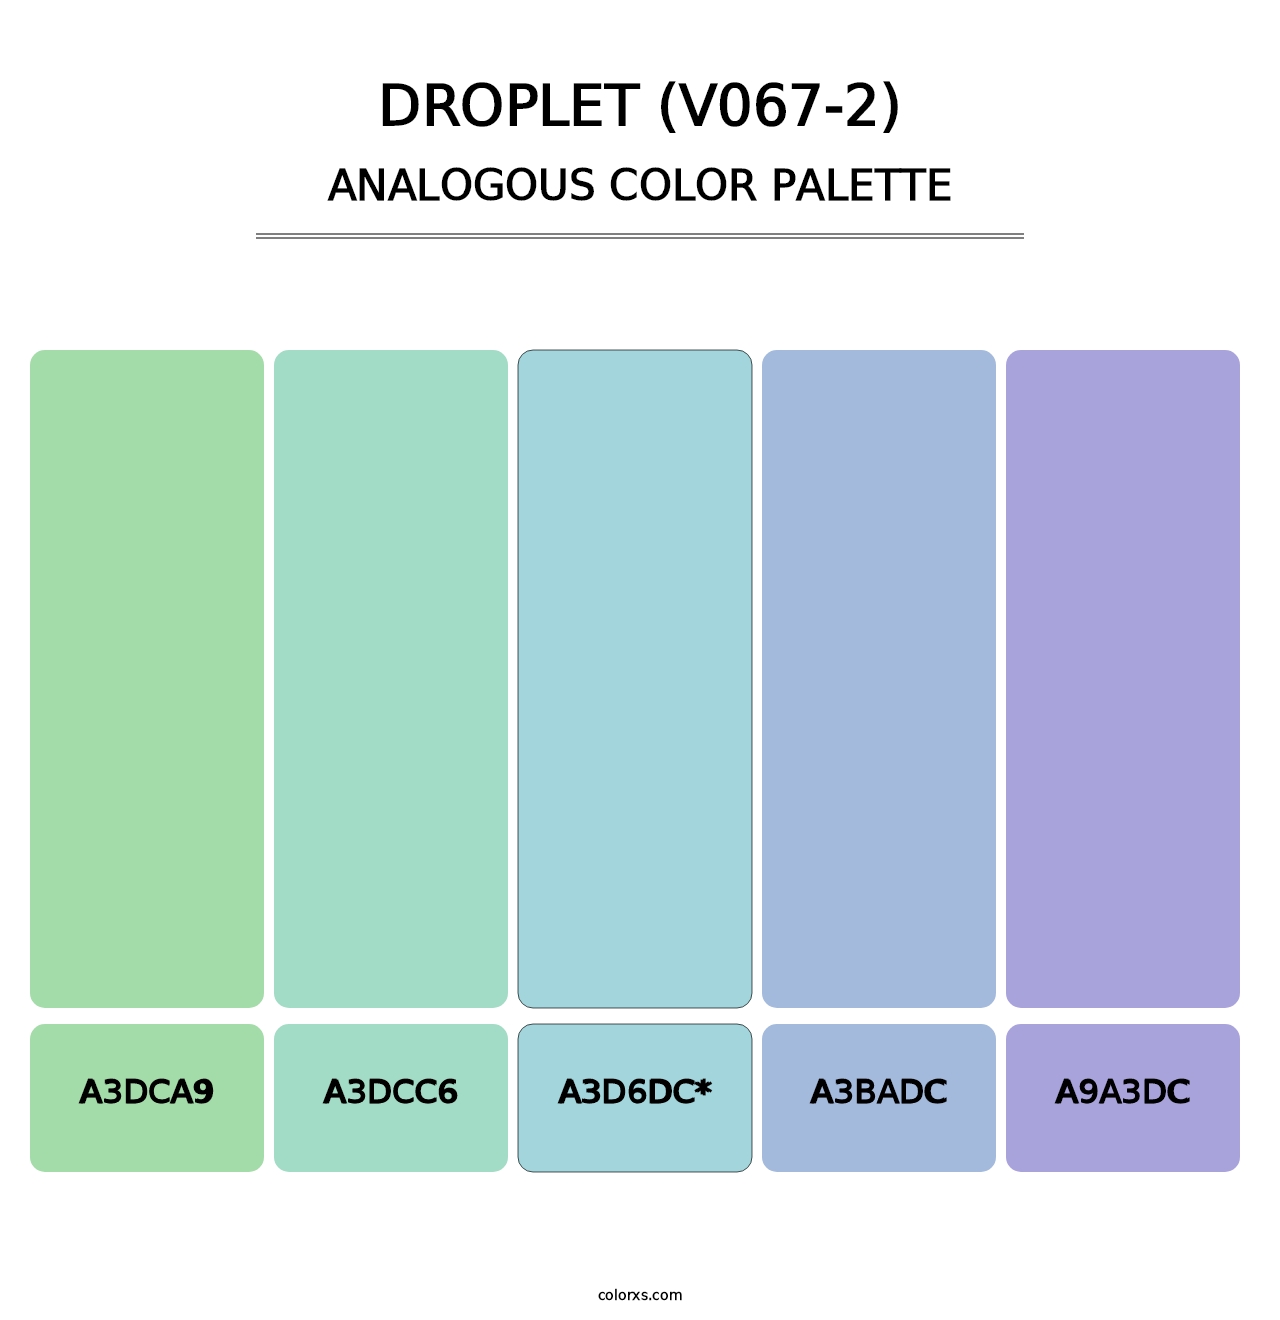 Droplet (V067-2) - Analogous Color Palette